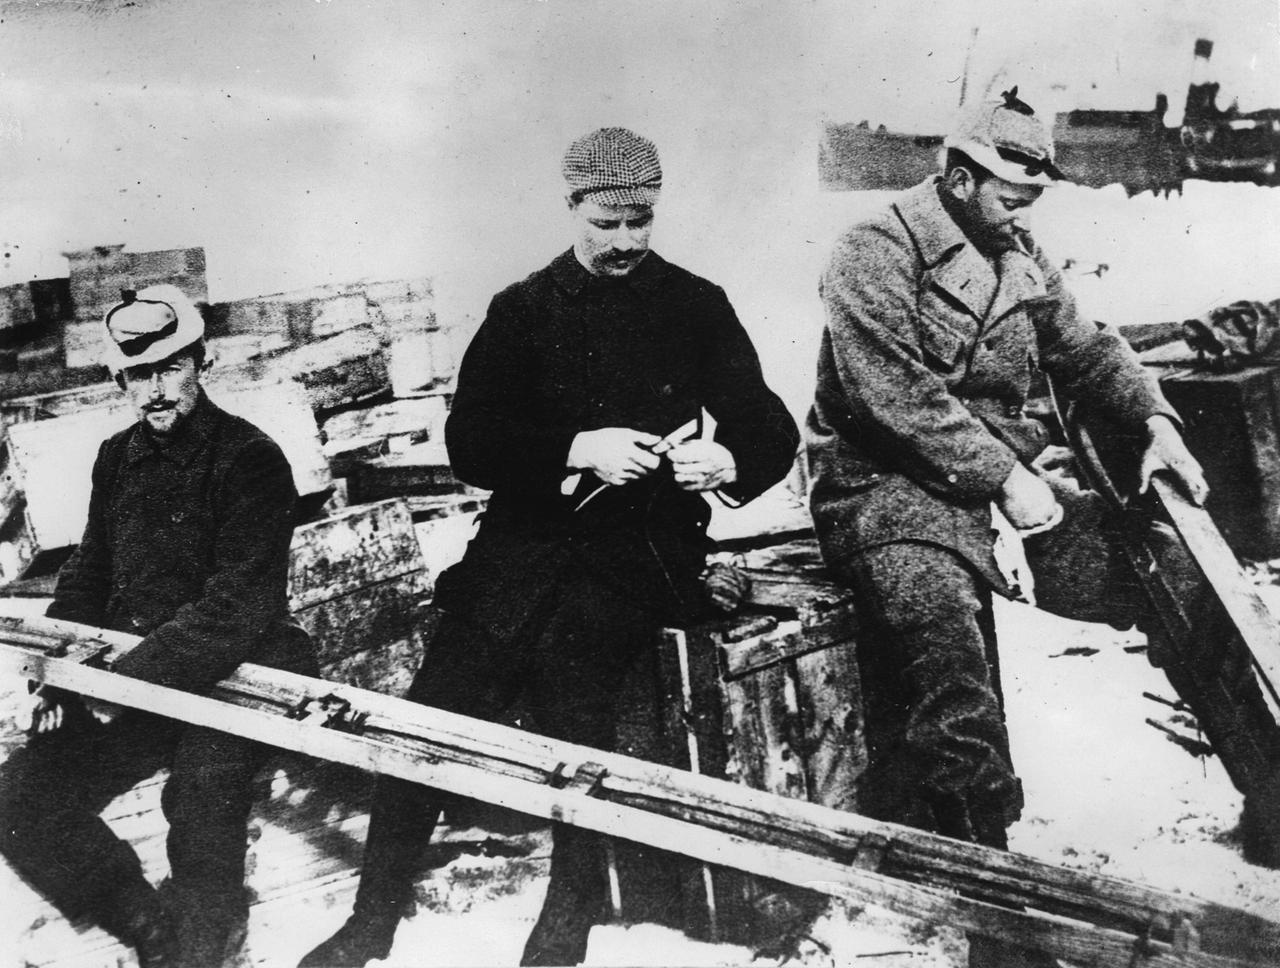 Der schwedische Polarforscher Salomon August Andrée (rechts) mit seinen Kollegen Knut Fraenkel  und Nils Strindberg. 1897. Photographie.